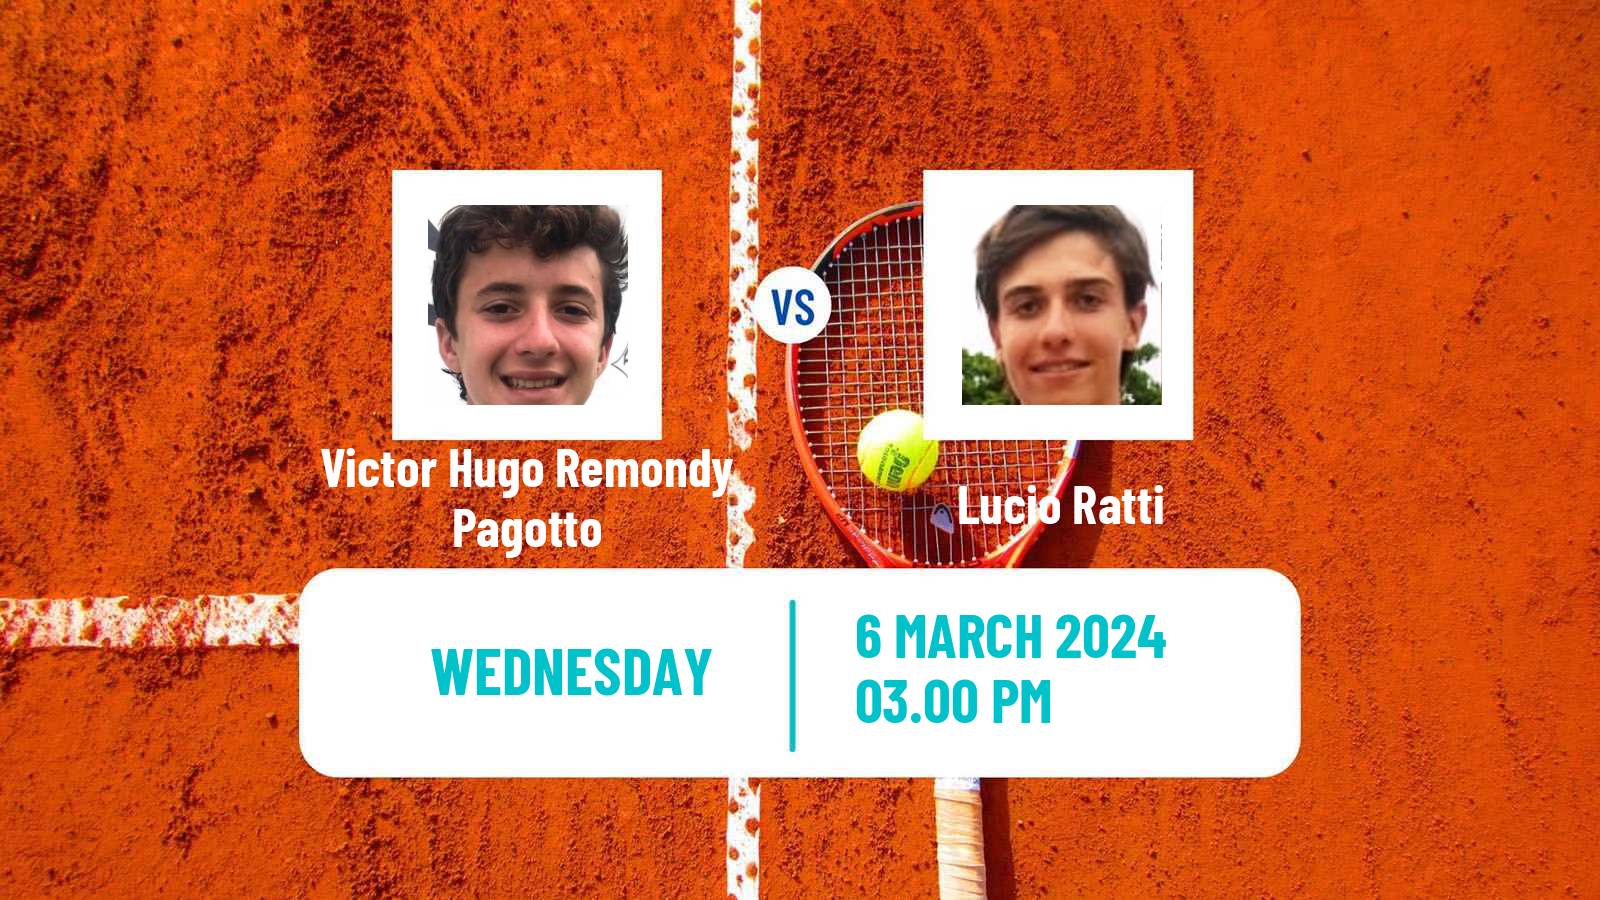 Tennis ITF M25 Recife Men Victor Hugo Remondy Pagotto - Lucio Ratti